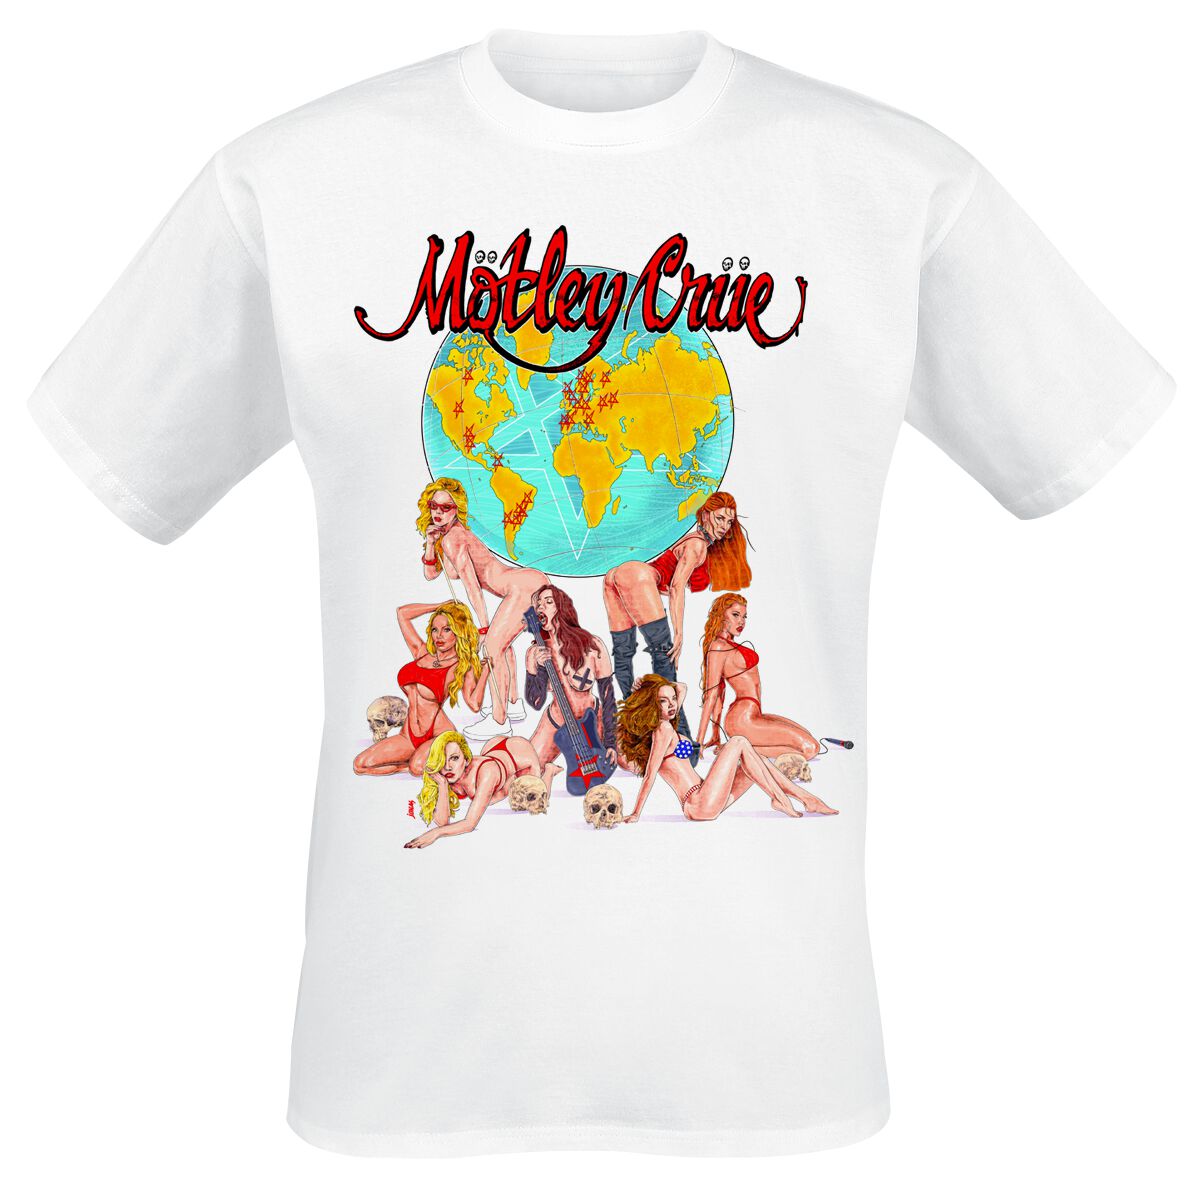 Mötley Crüe T-Shirt - Europe - S bis 4XL - für Männer - Größe XXL - weiß  - Lizenziertes Merchandise!